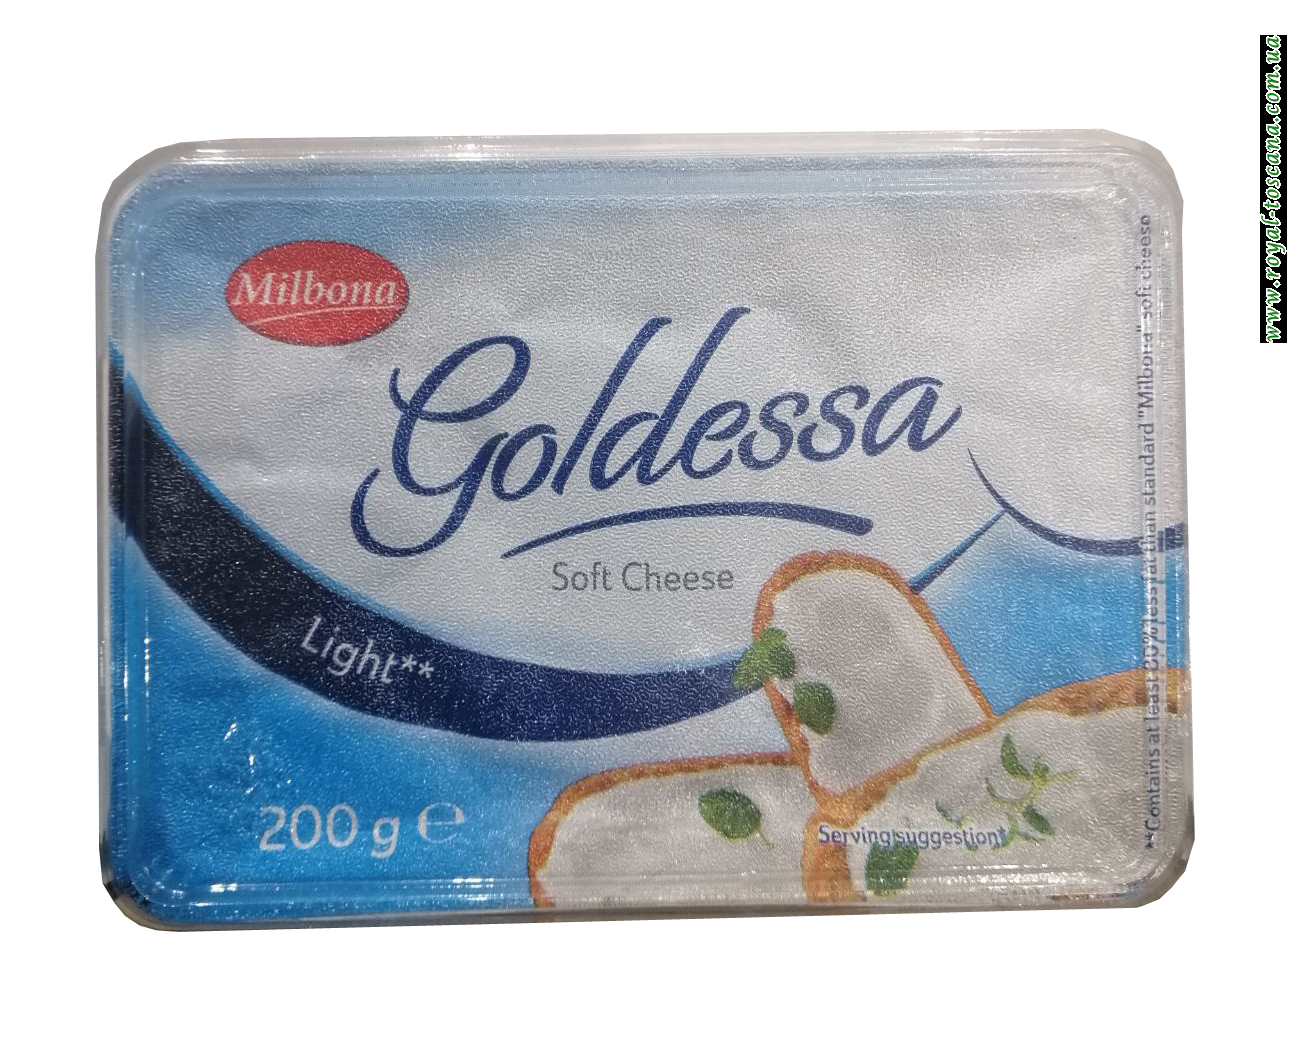 Сыр плавленный Milbona Goldessa Light, 200г